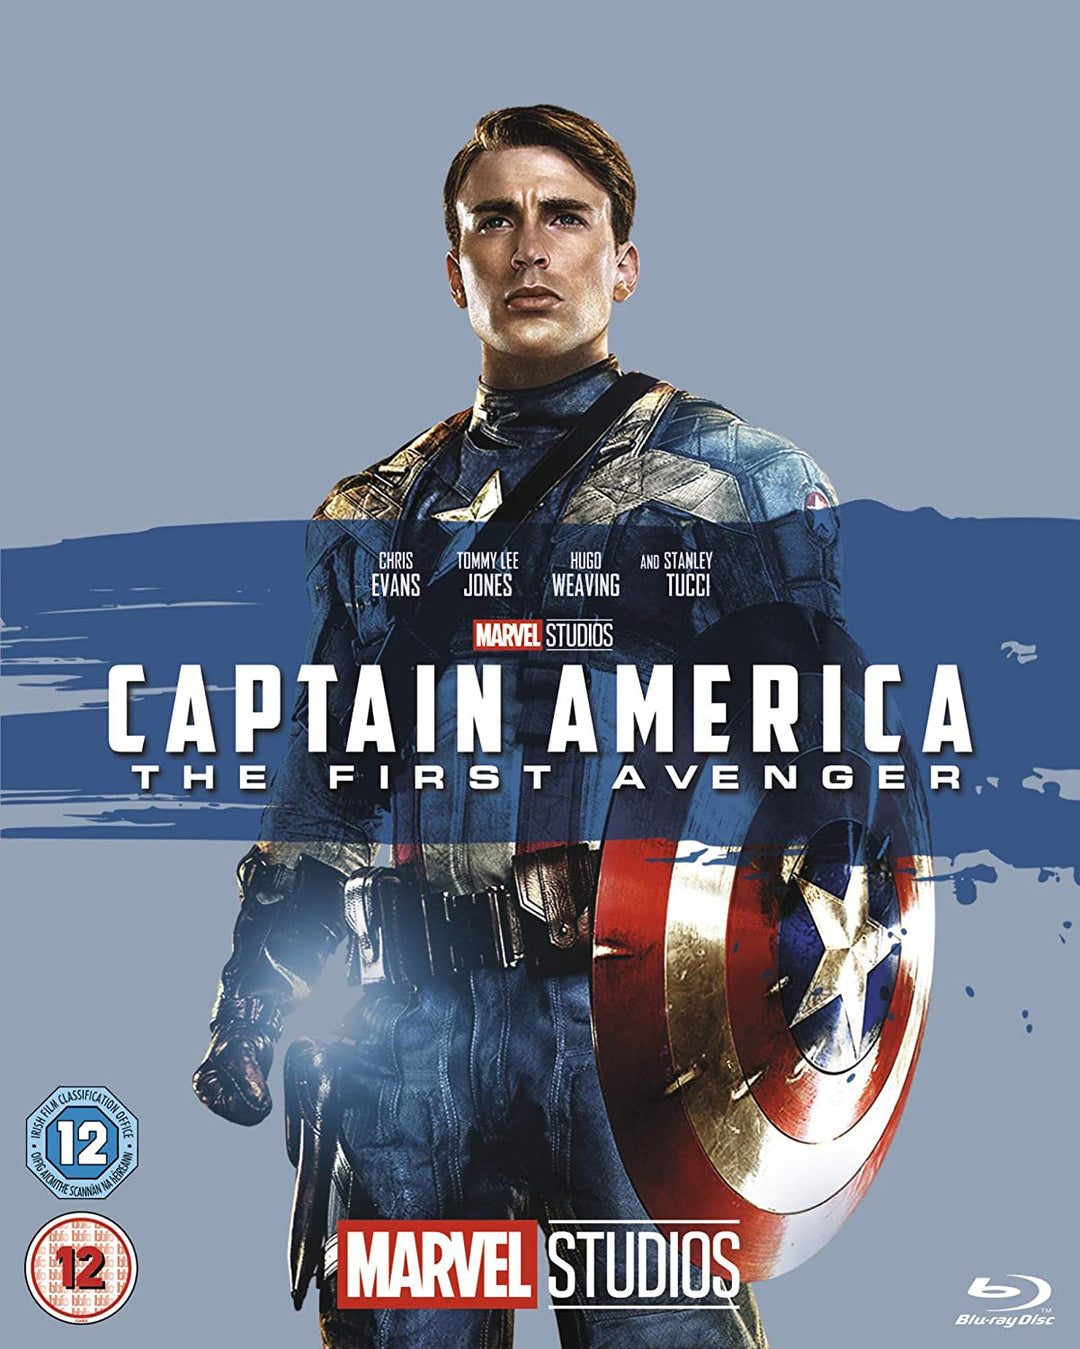 Capitán América: El primer vengador [Blu-ray] [Región libre]